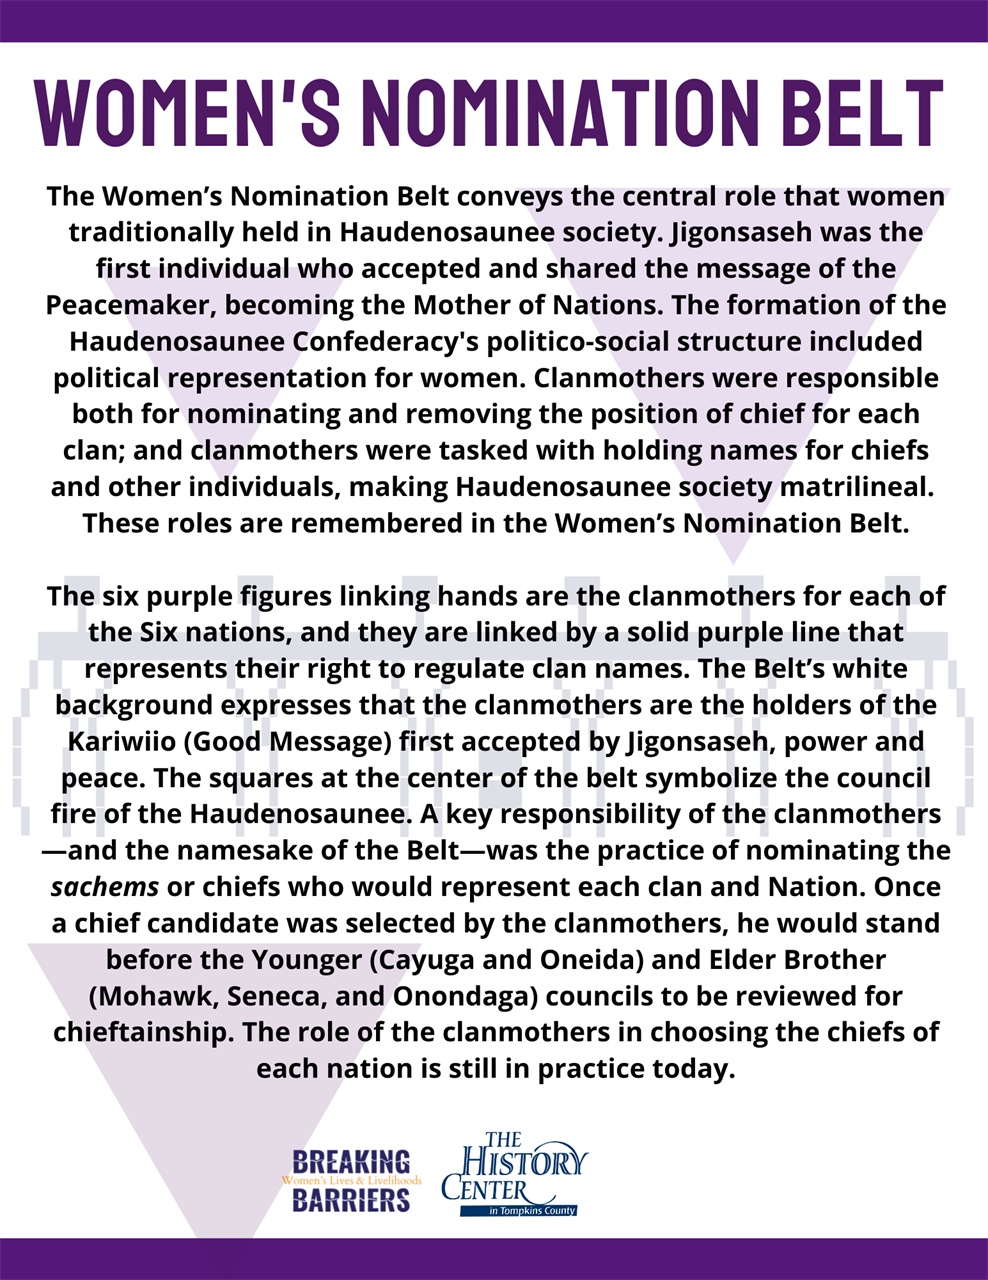 Women’s Nomination Belt information